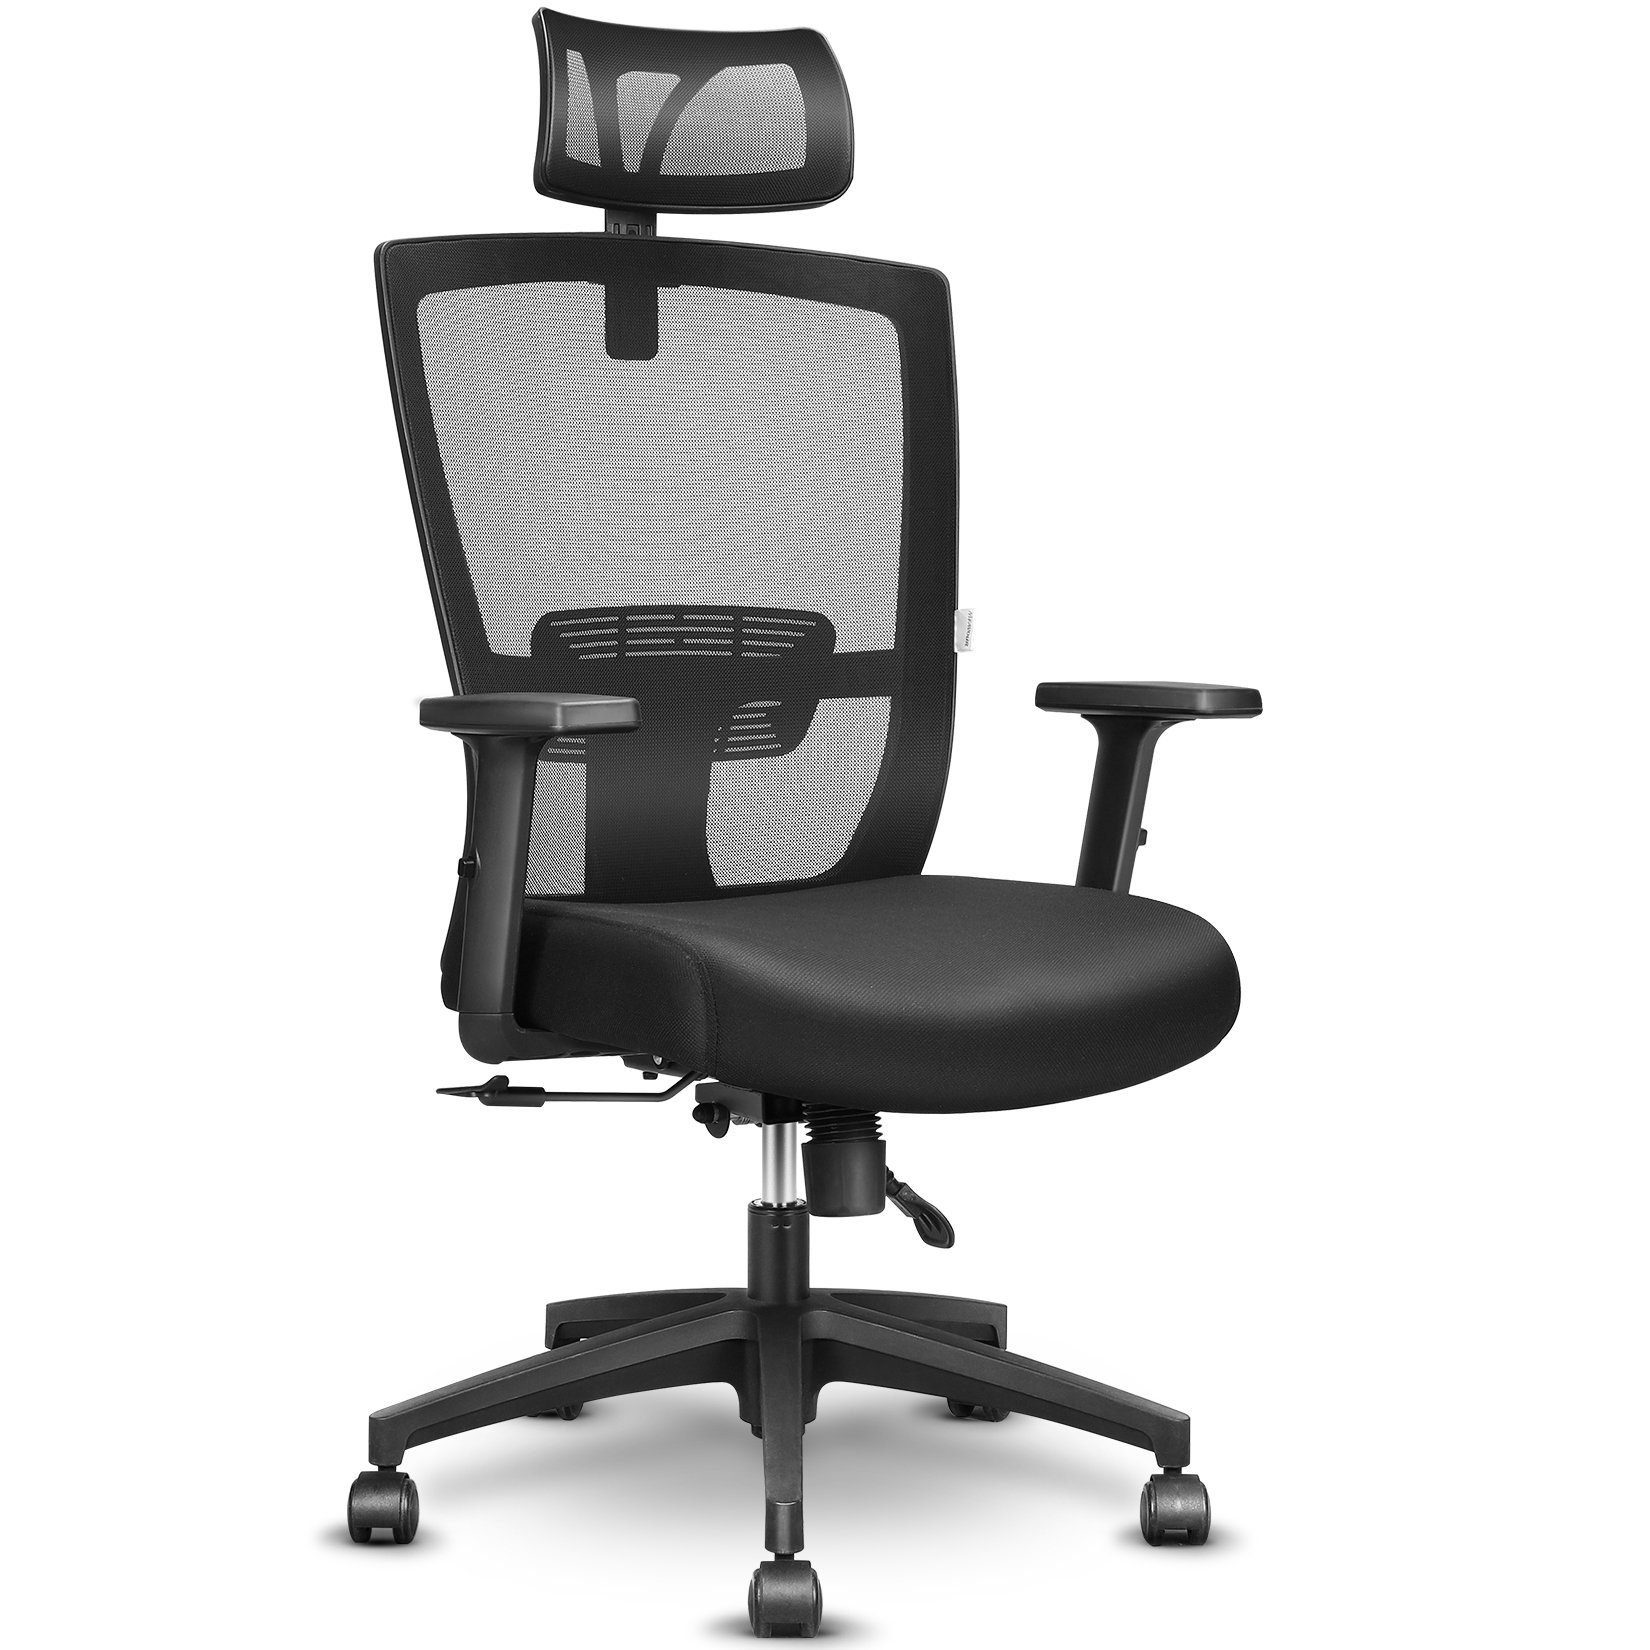 MFAVOUR Chefsessel »Bürostuhl ergonomisch Ergonomisch Schreibtischstuhl  Computer Stuhl drehstuhl mit Netz-Design-Sitzkissen, Verstellbare  Wippfunktion, Armlehne, Sitzhöh, Kopfstütze Maximale Belastbarkeit 135 kg,  schwarz« online kaufen | OTTO